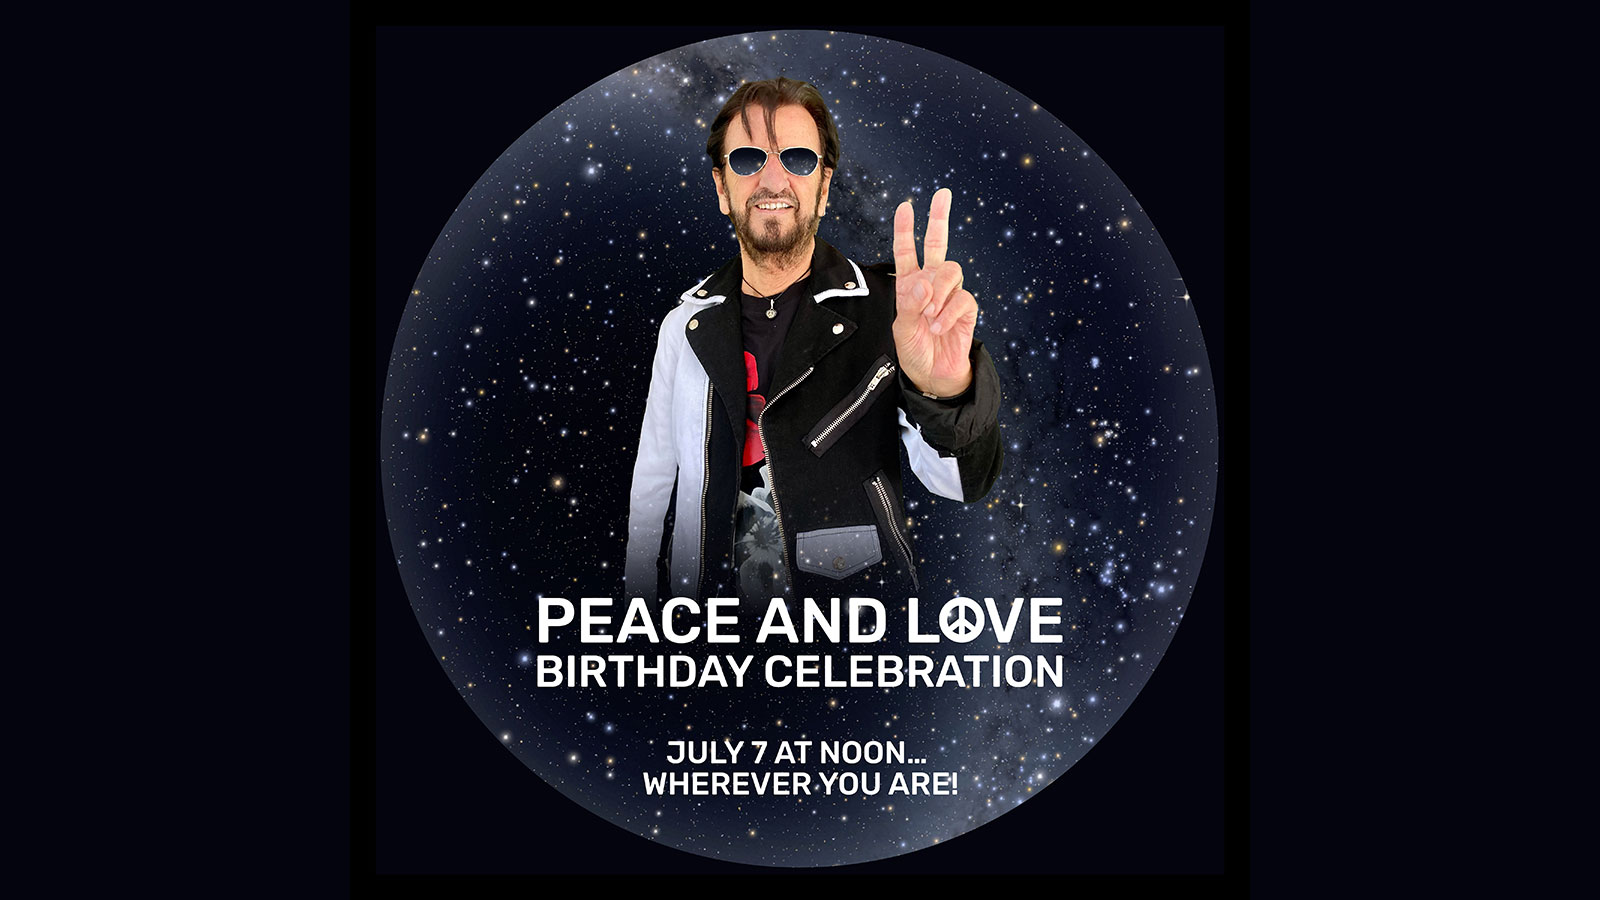 Ringo Starr Birthday Celebration